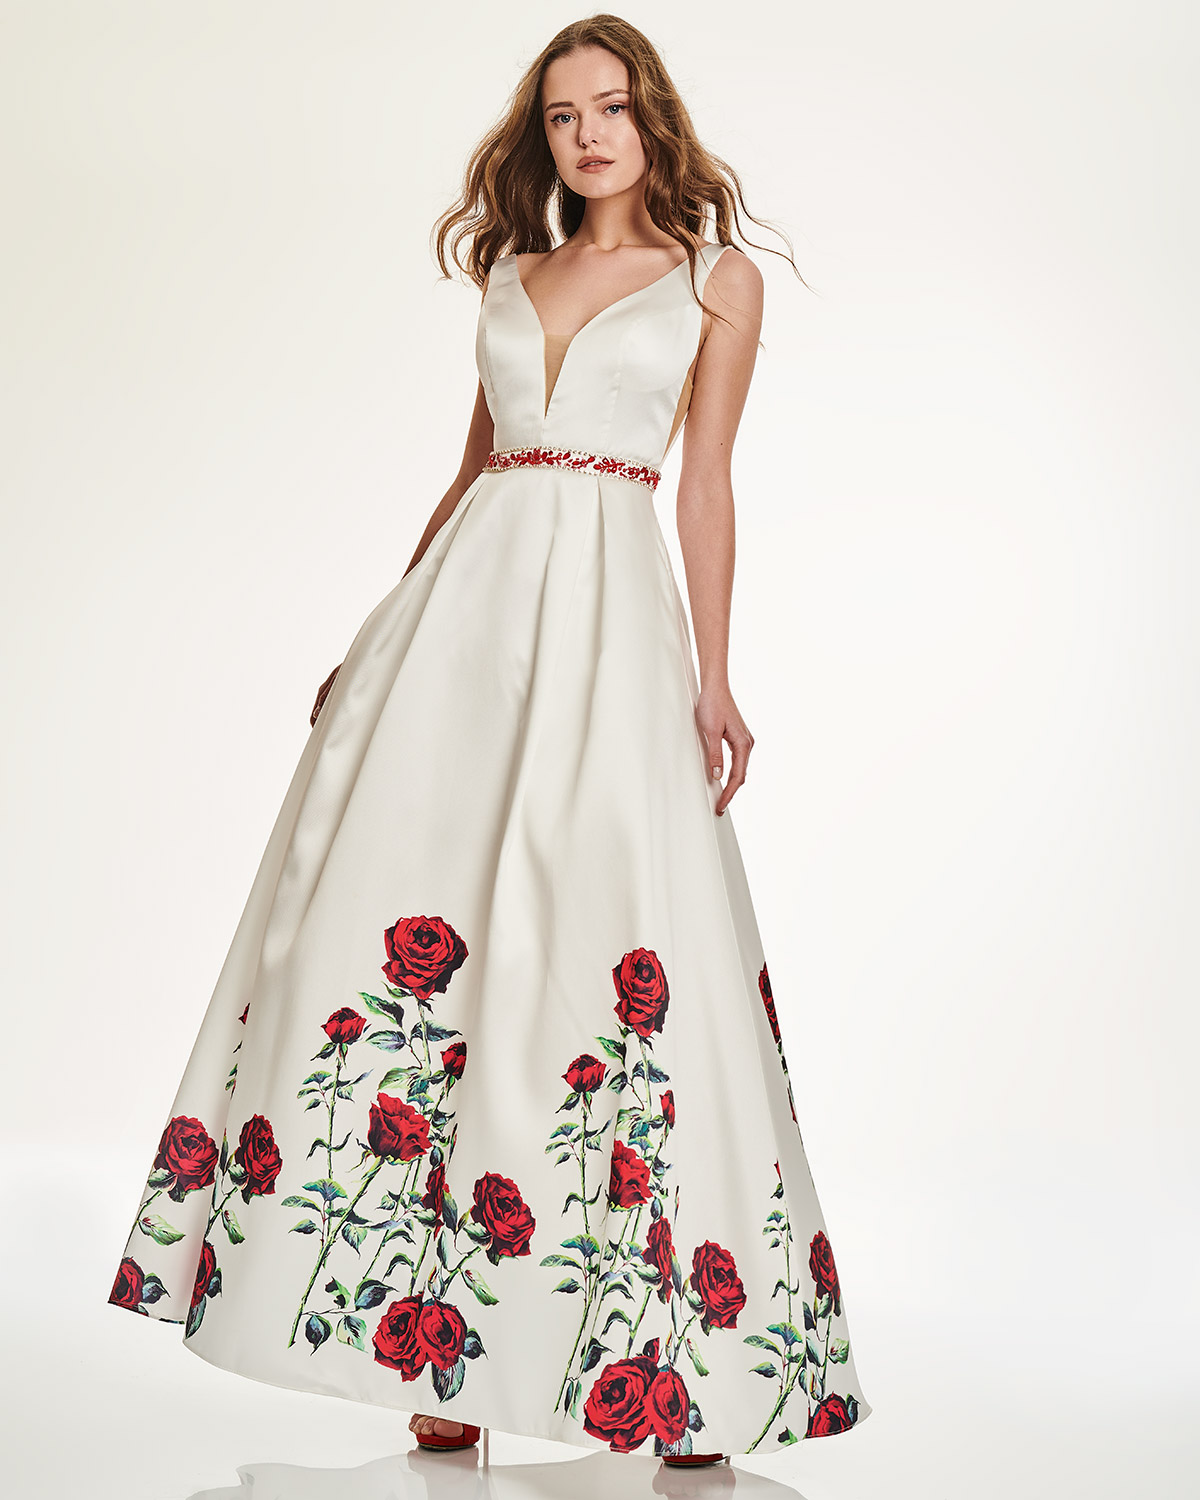 Κοκτέιλ Φορέματα / Φόρεμα μακρύ με φλοράλ μοτίβο και κέντημα στη μέση